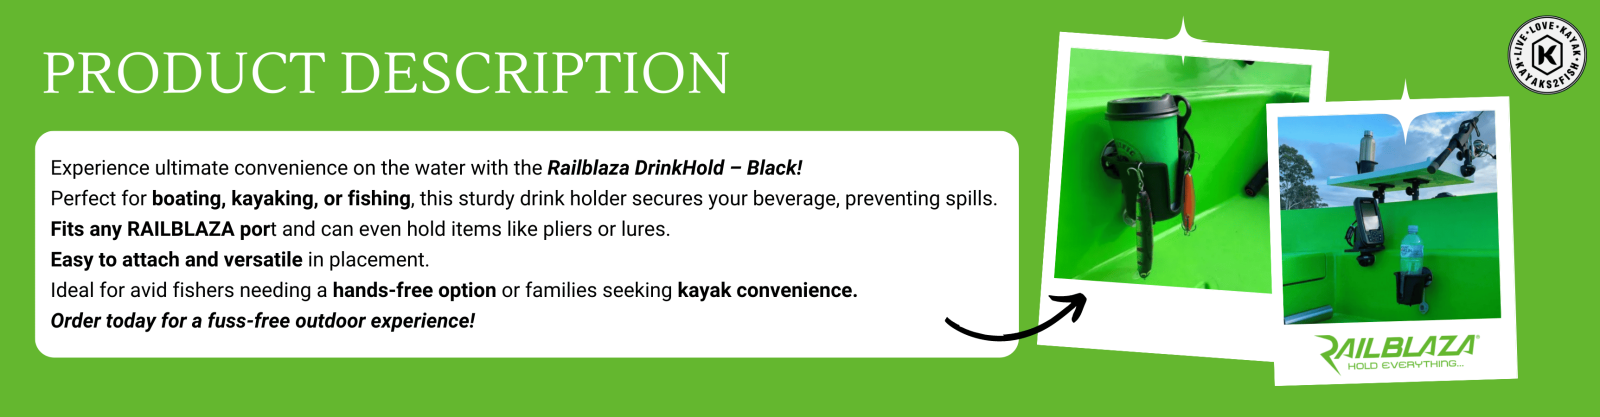 Railblaza DrinkHold Black